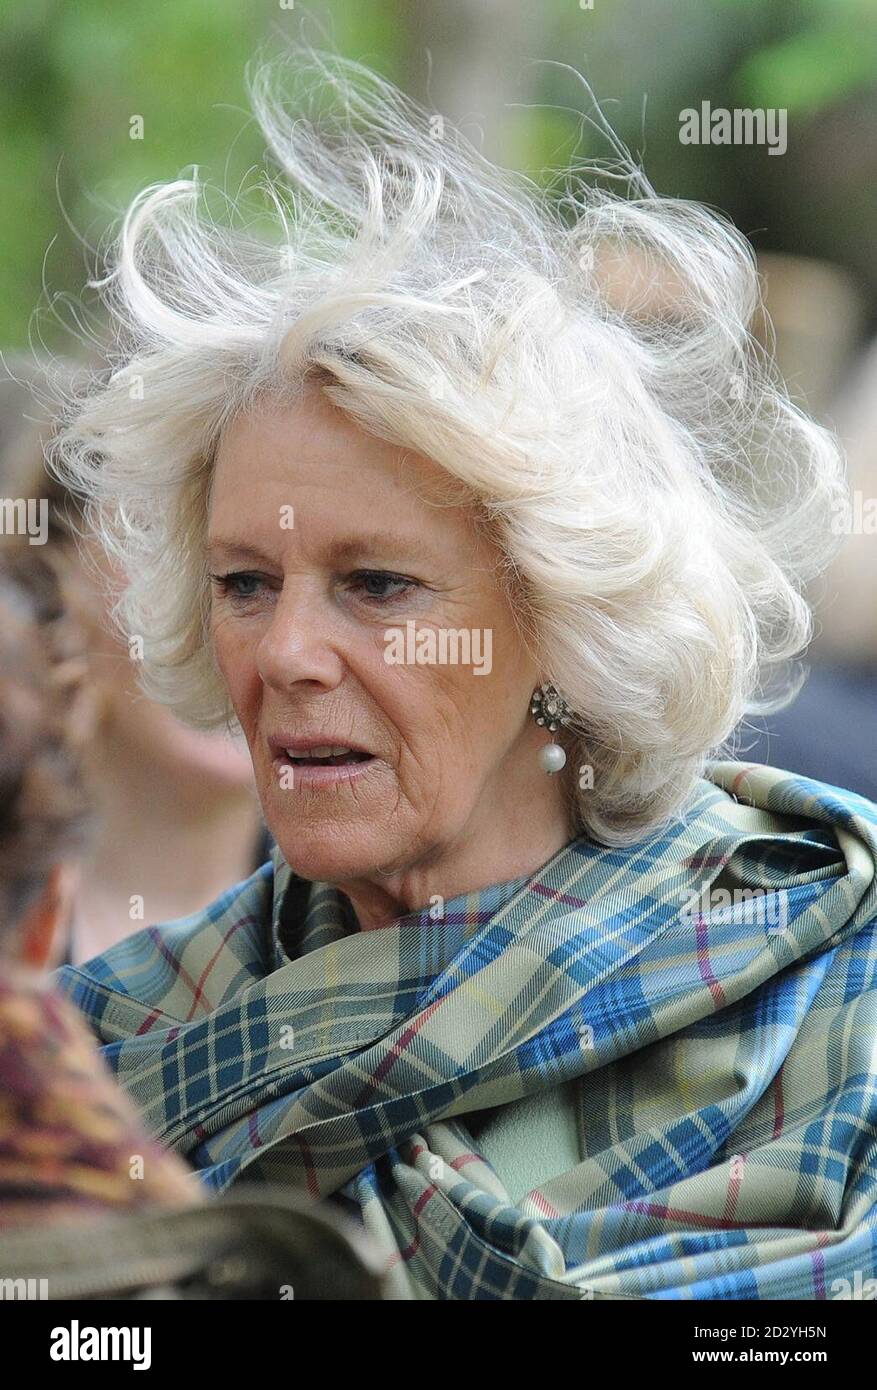 La duquesa de Cornualles, también conocida como la duquesa de Rothesay en Escocia, durante una visita al proyecto comunitario del mercado de hierba, que apoya a las personas a través de transiciones en sus vidas y re-conectar a las personas desconectadas. Foto de stock